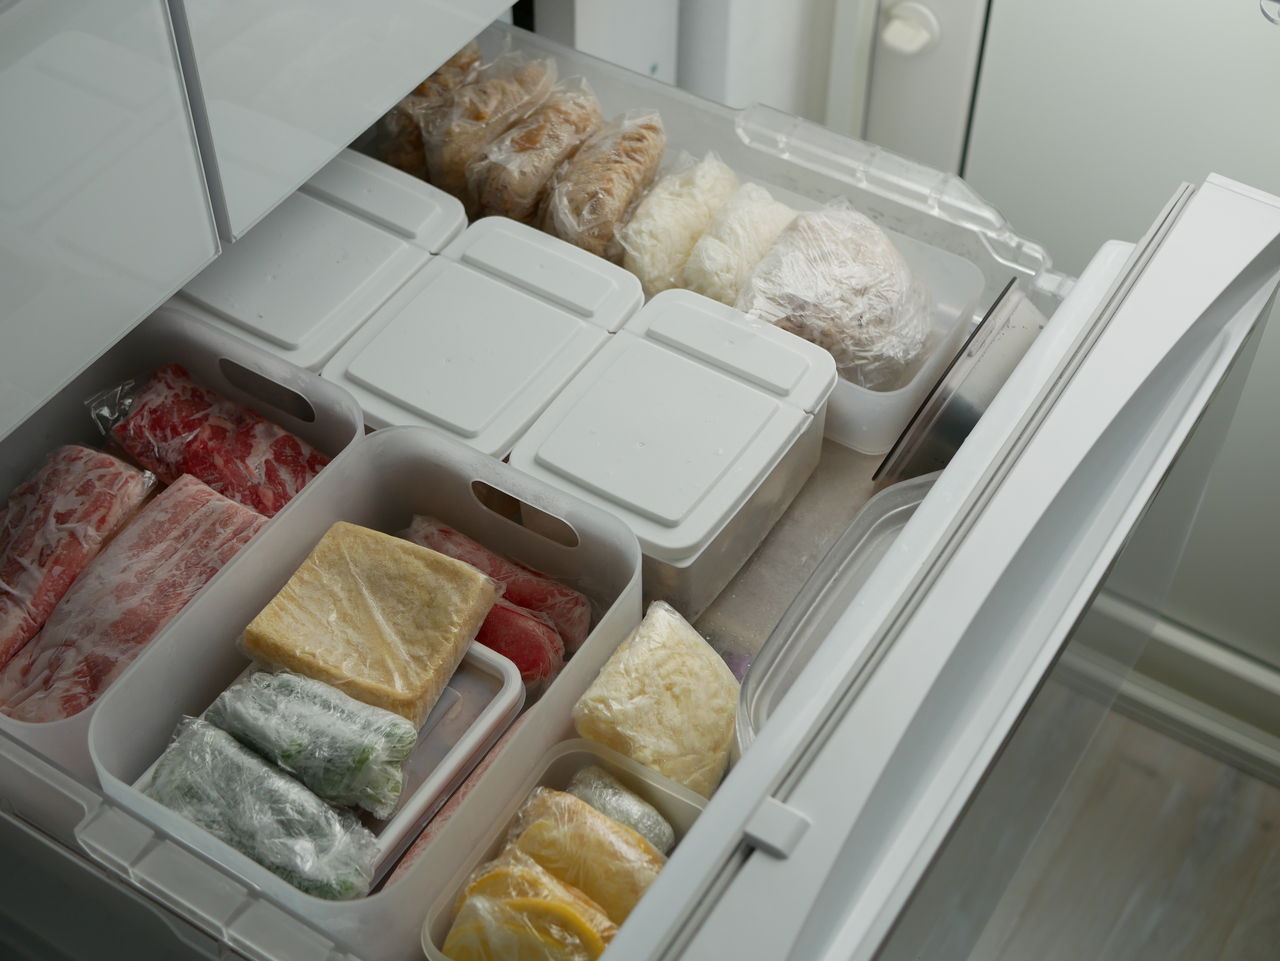 ダイソー セリア オール100均で出来る冷凍庫収納 公開デス 艸 ちいさなおうちのちいさなしあわせ